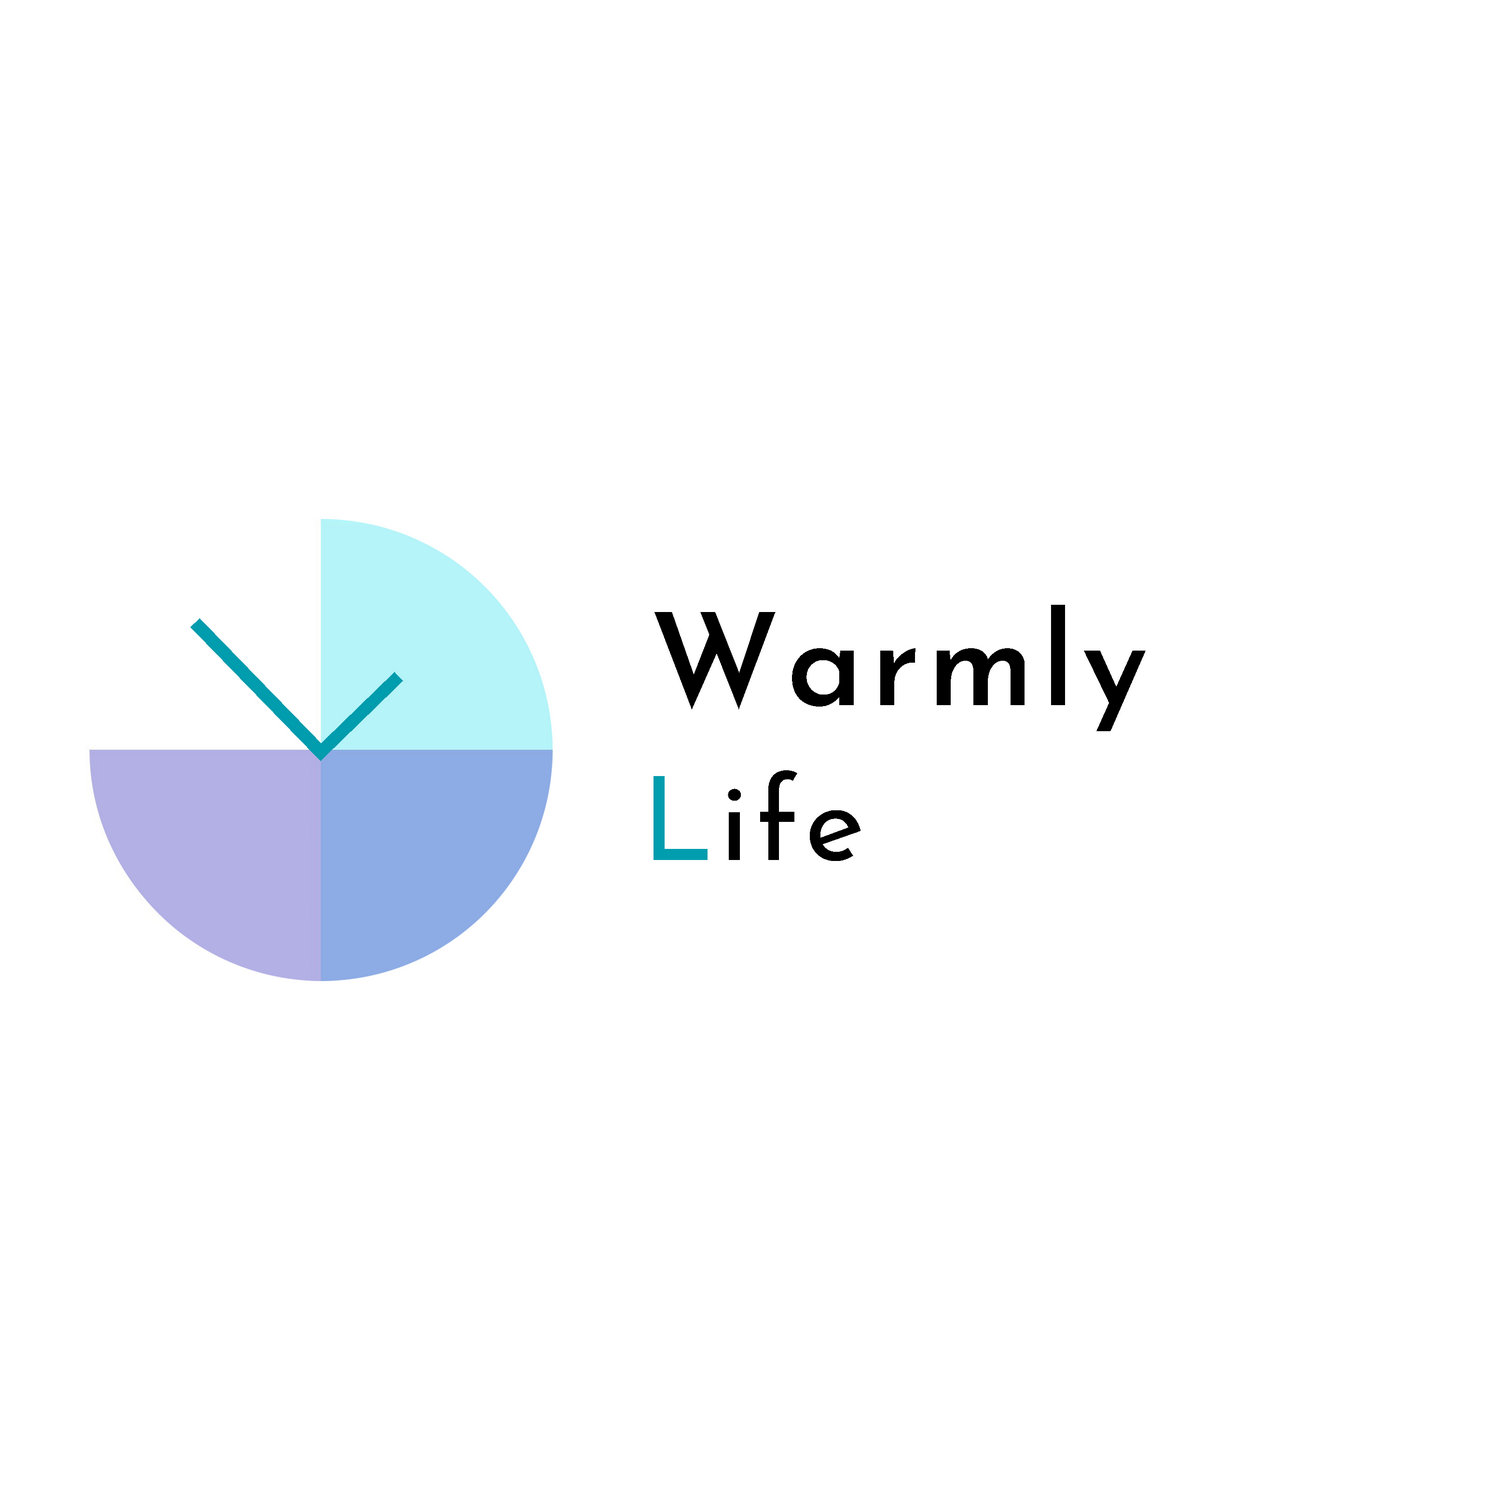 Warmly Life